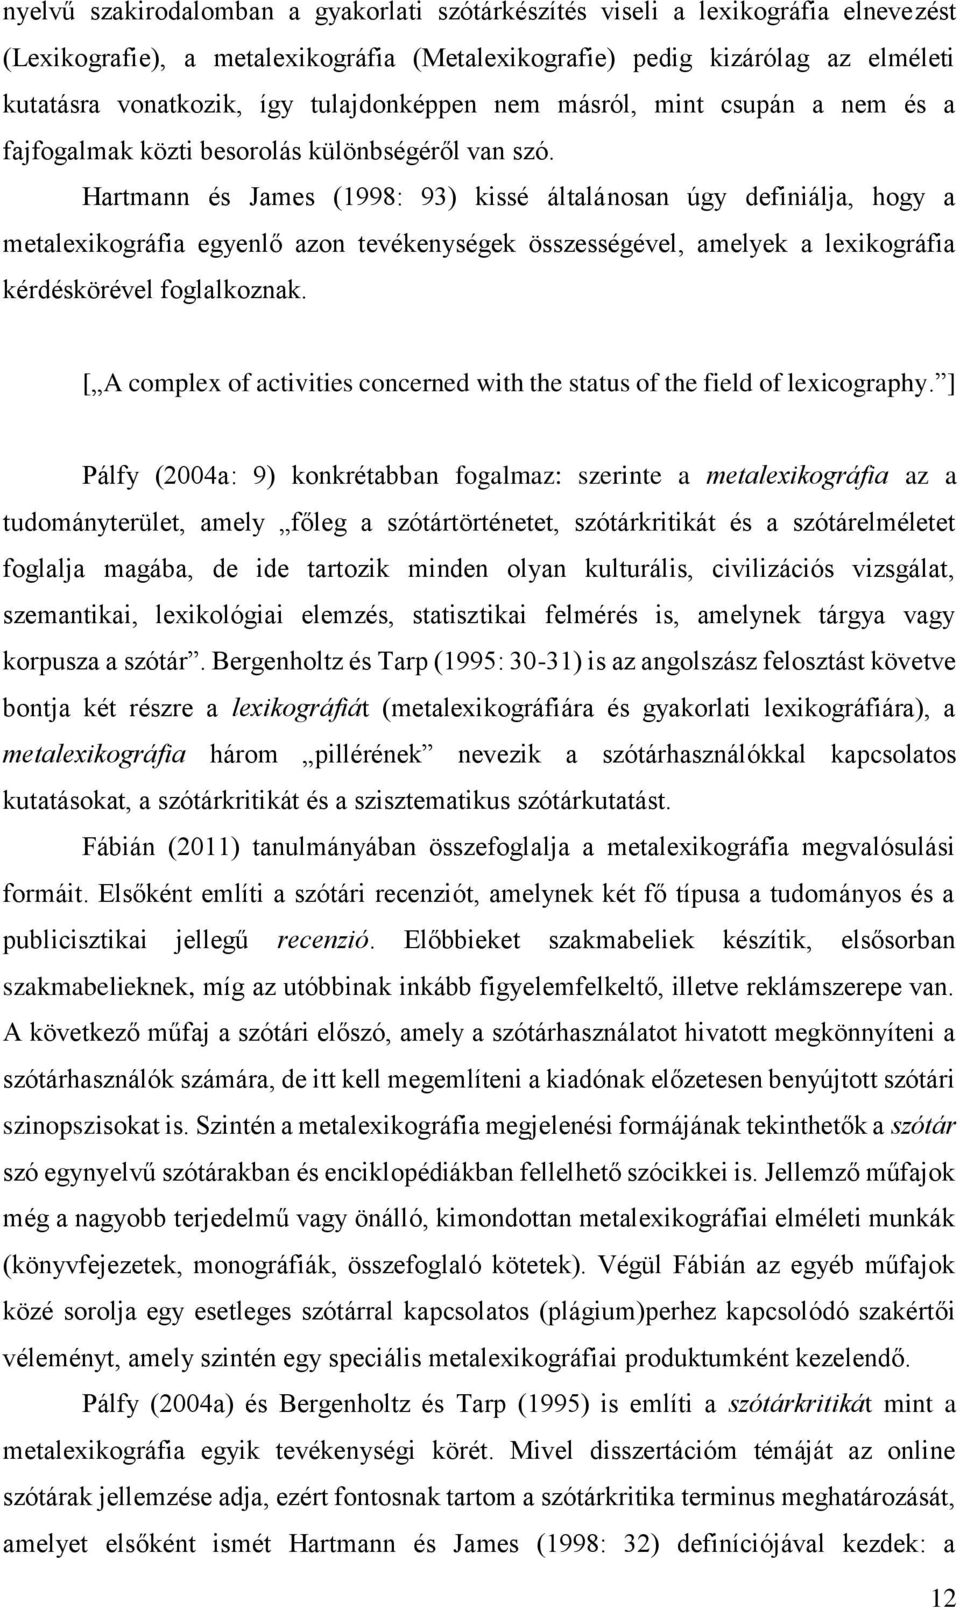 Hartmann és James (1998: 93) kissé általánosan úgy definiálja, hogy a metalexikográfia egyenlő azon tevékenységek összességével, amelyek a lexikográfia kérdéskörével foglalkoznak.